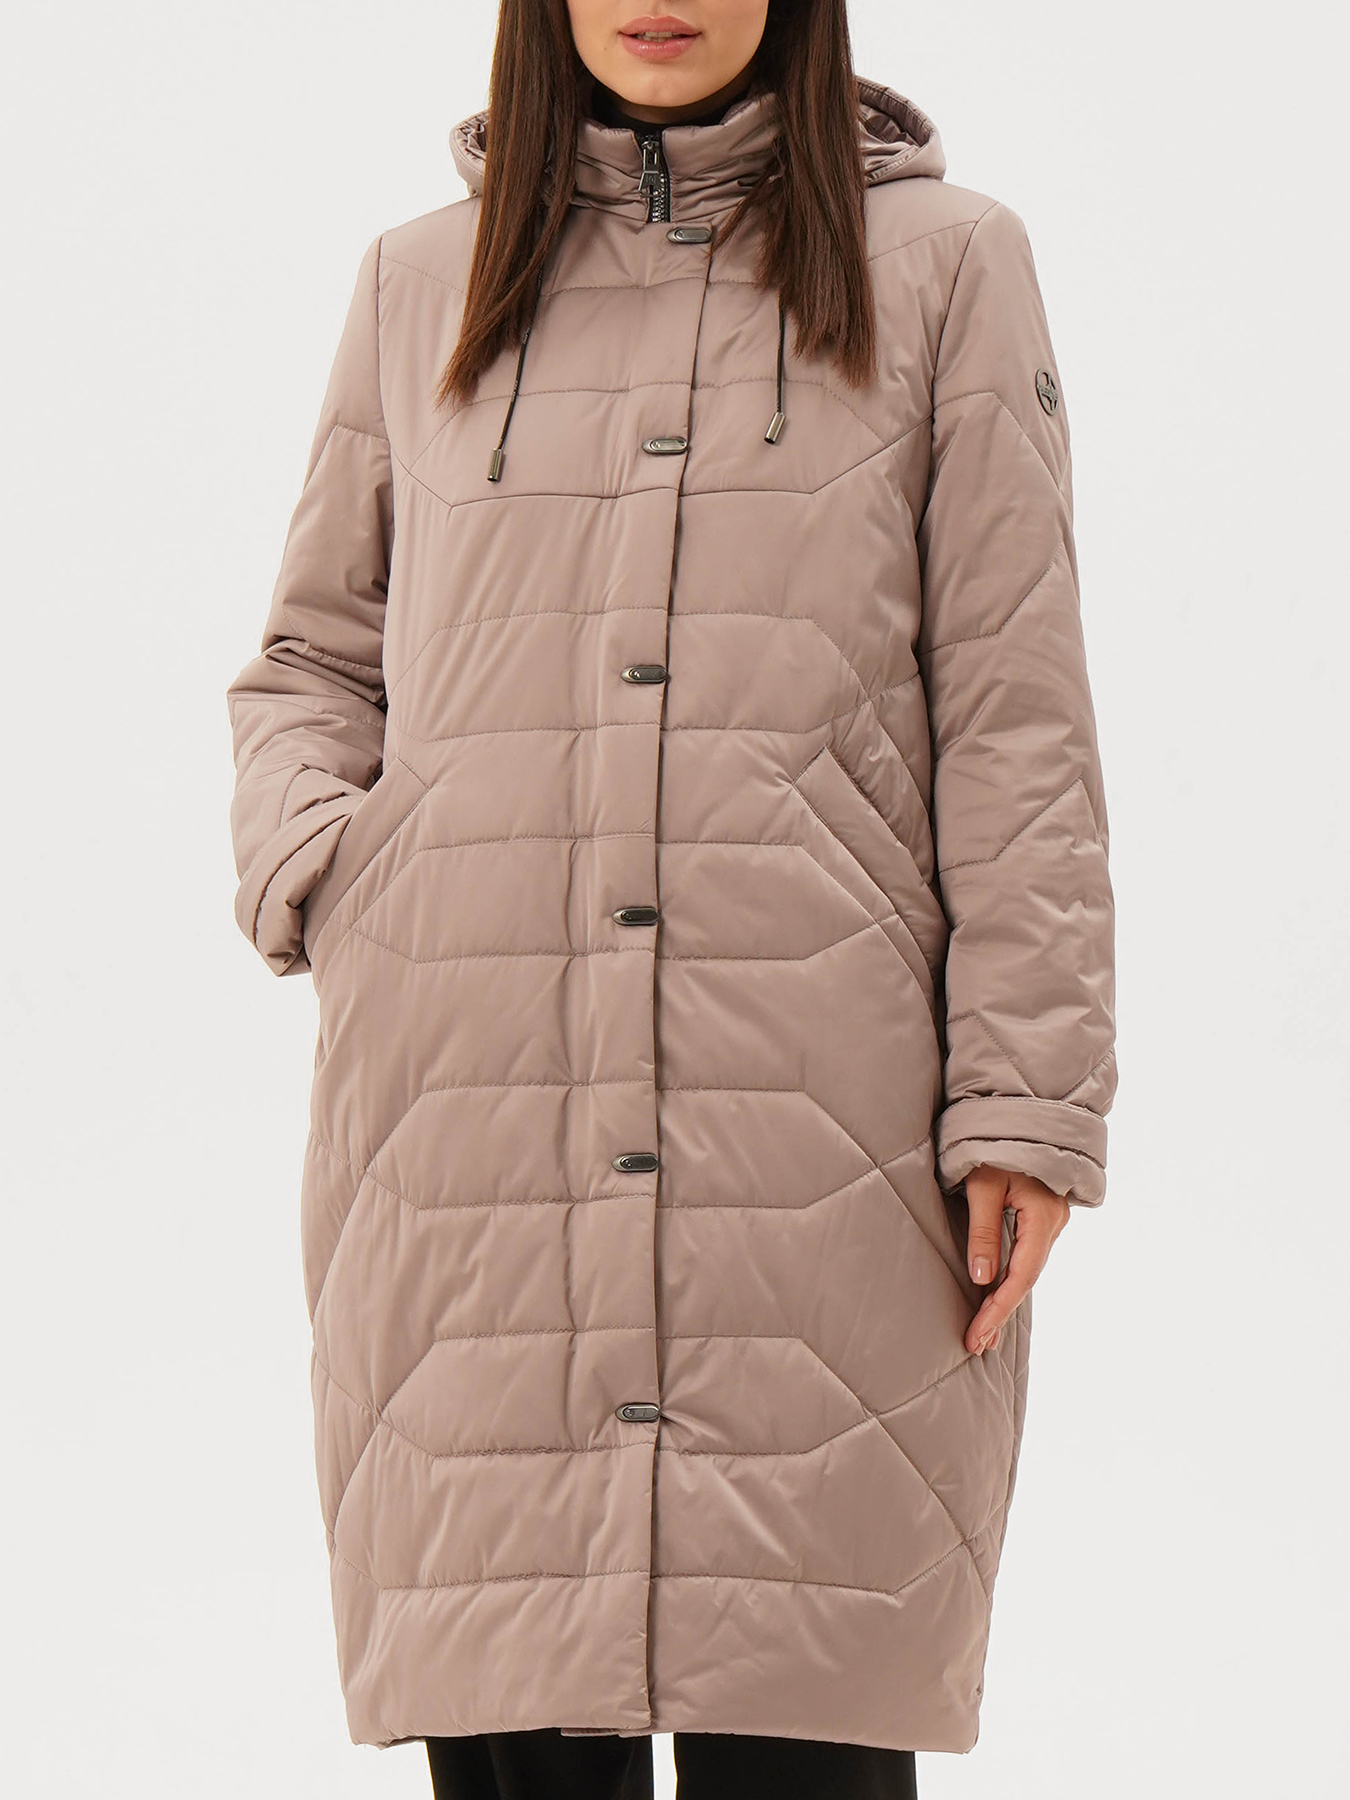 Пальто зимнее Maritta 433520-025, цвет бежевый, размер 48